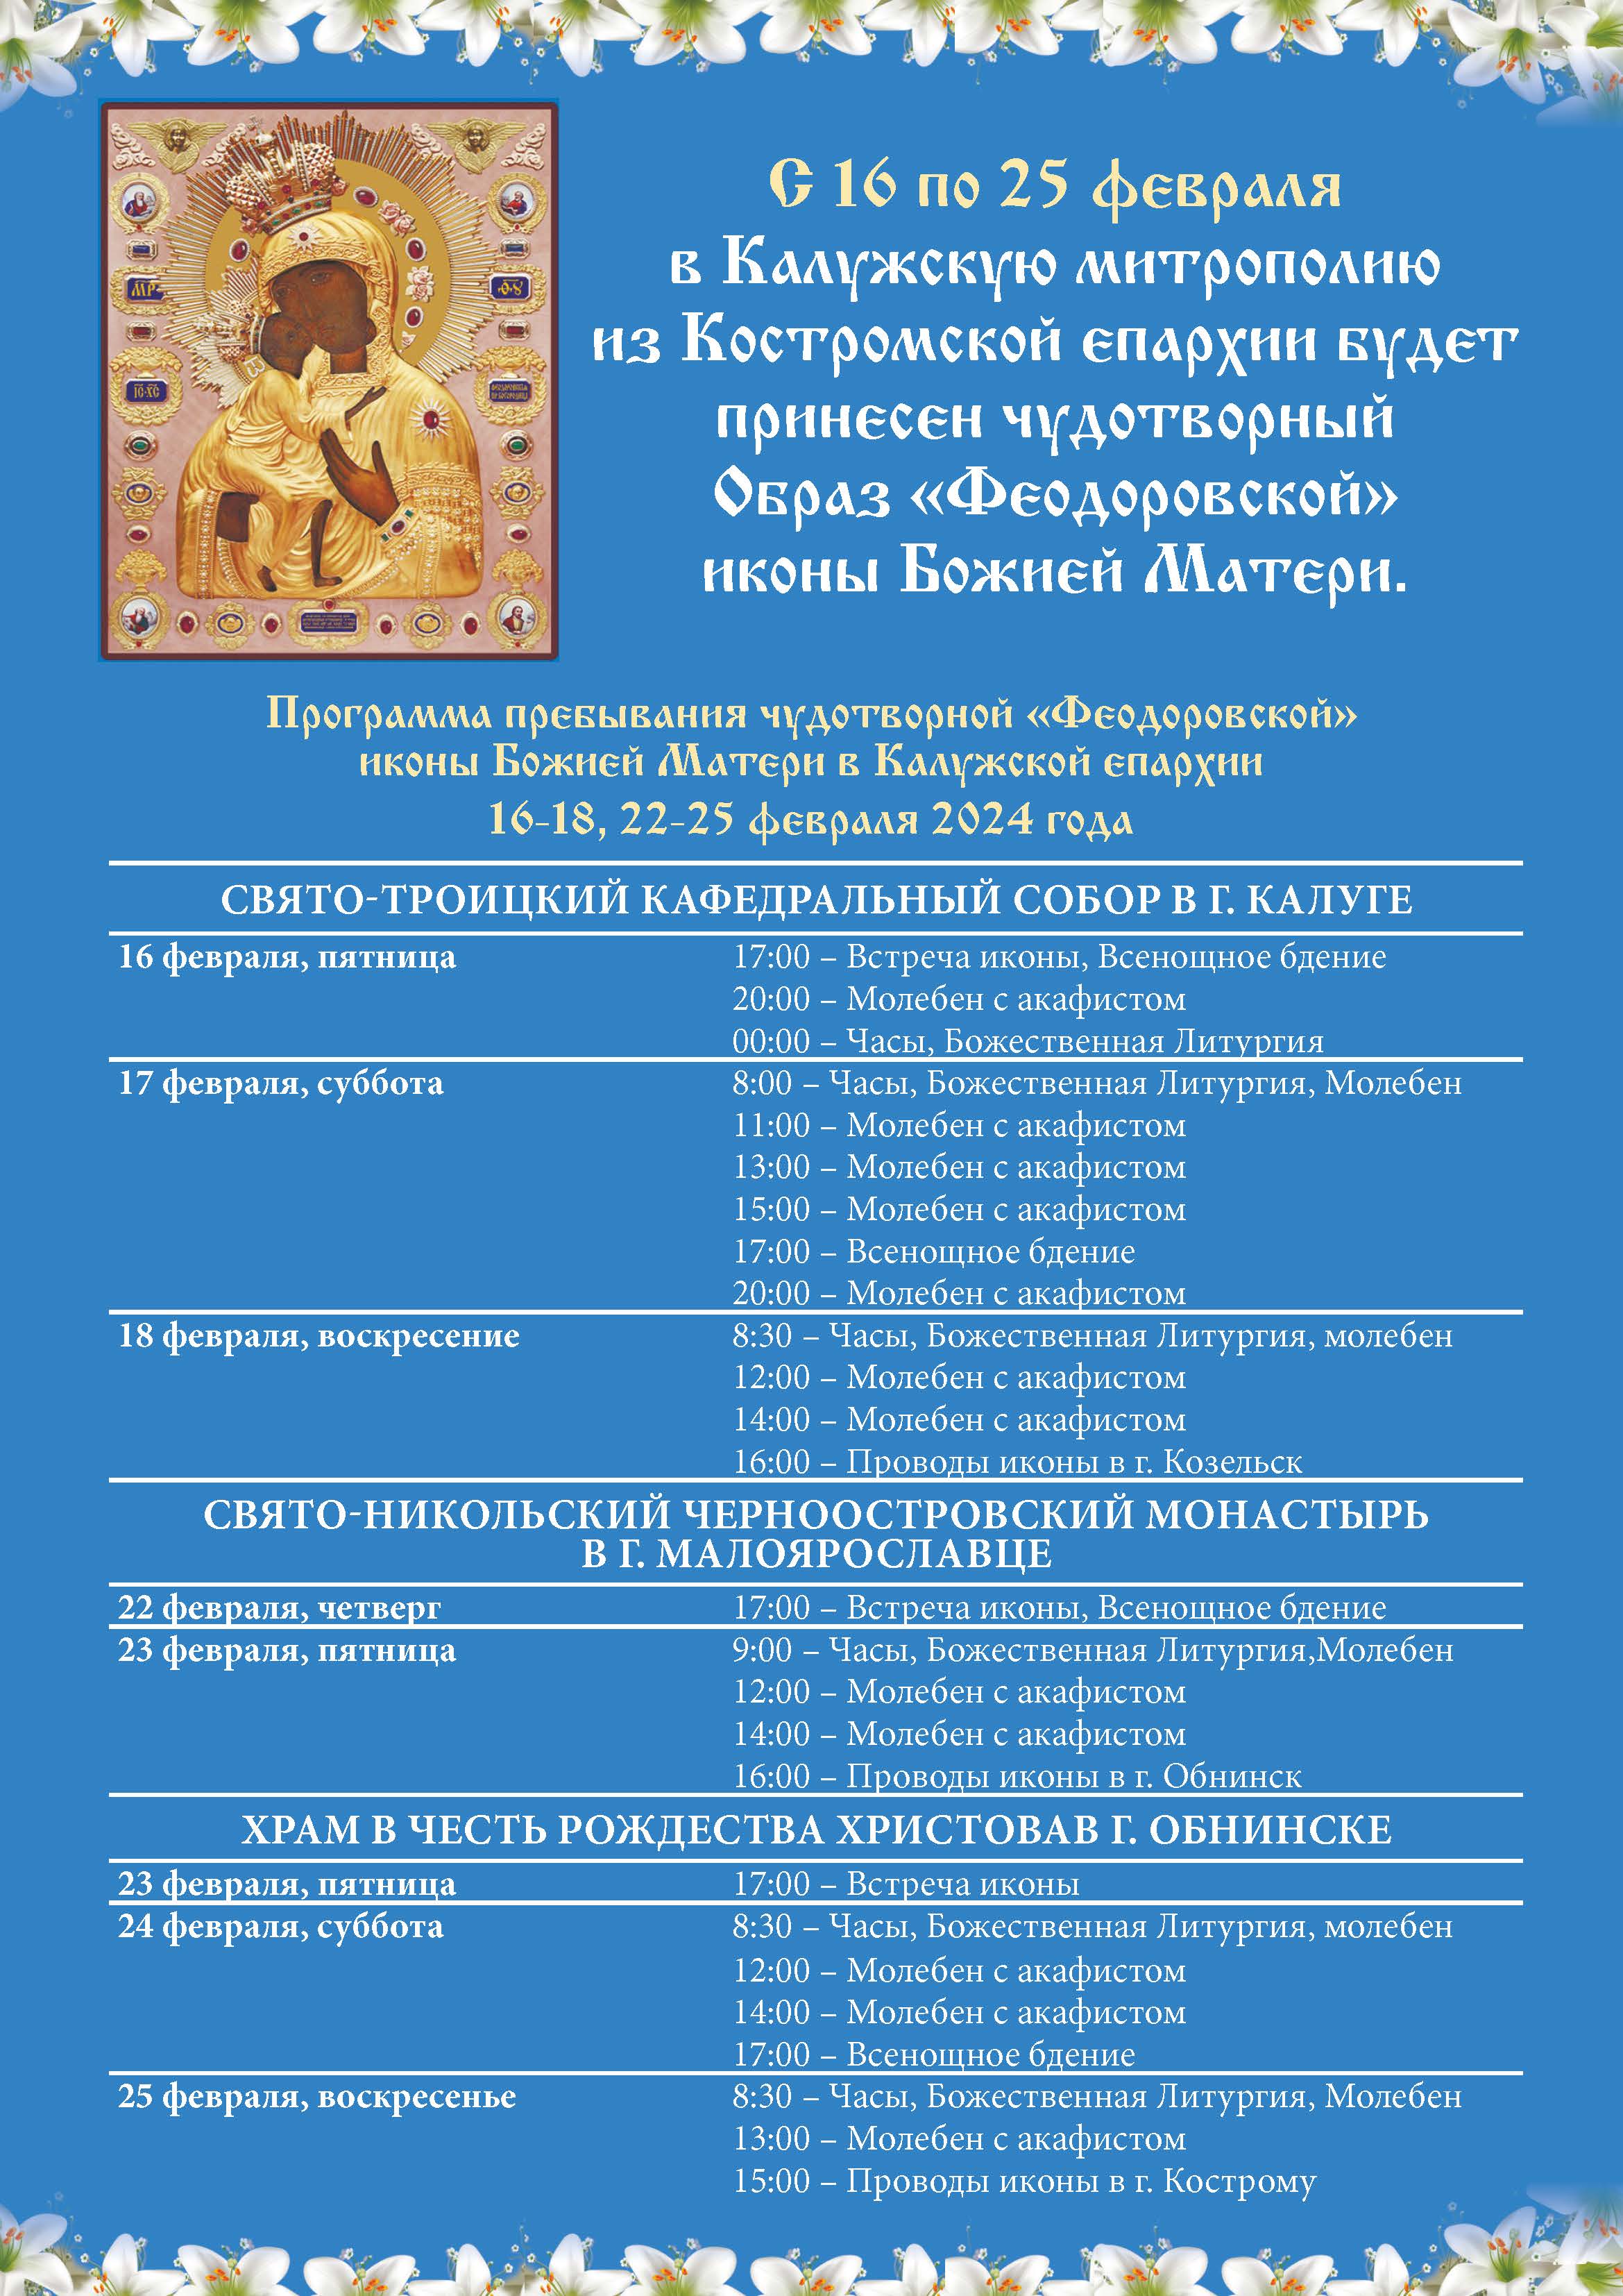 С 16 по 25 февраля в Калужской митрополии будет находиться чудотворная Феодоровская икона Пресвятой Богородицы